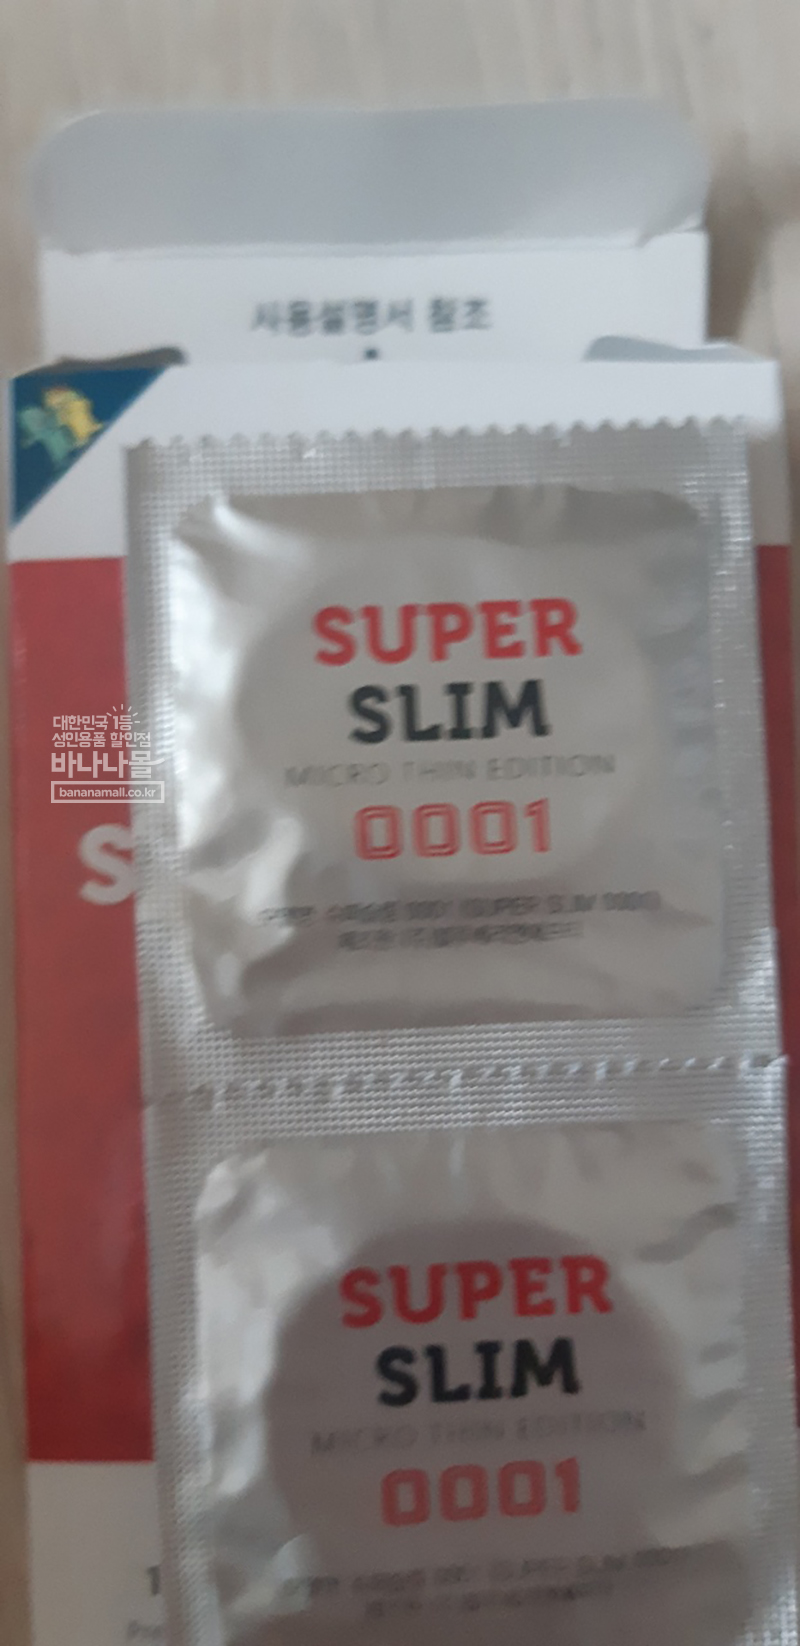  유니더스 슈퍼 슬림 0001 초박형 콘돔